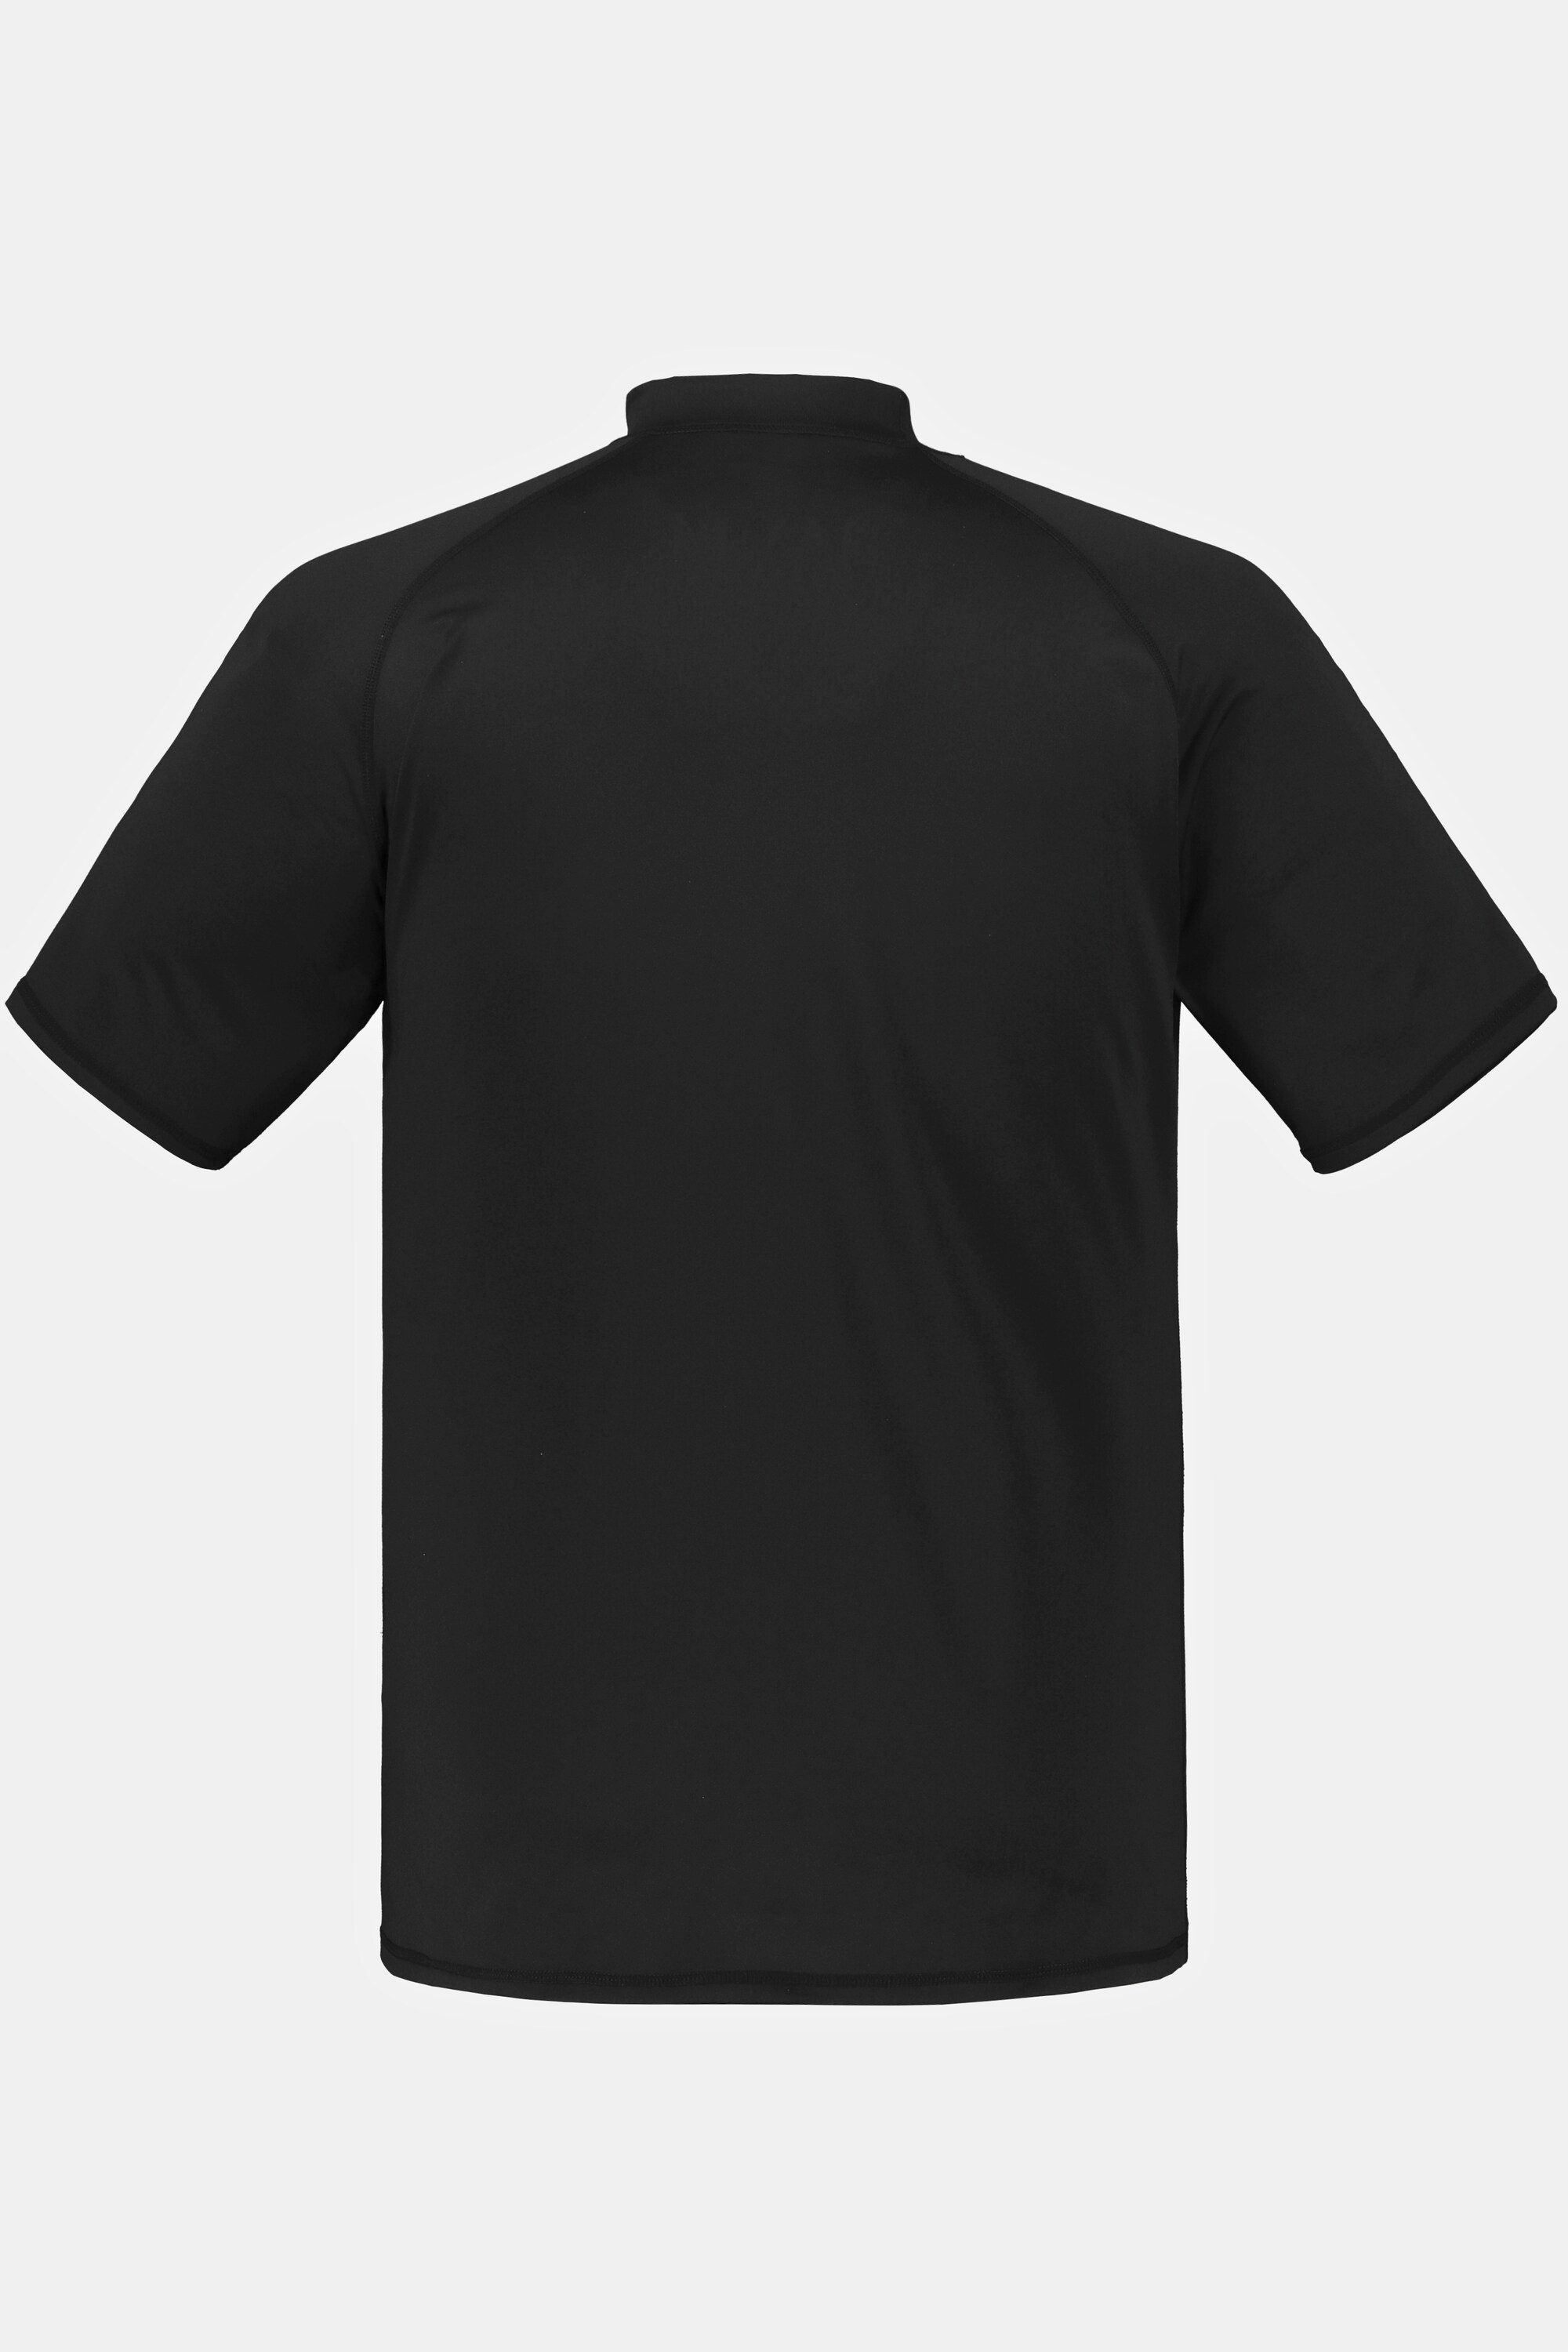 T-Shirt JP1880 UV-Schutz Halbarm schwarz Schwimmshirt Stehkragen